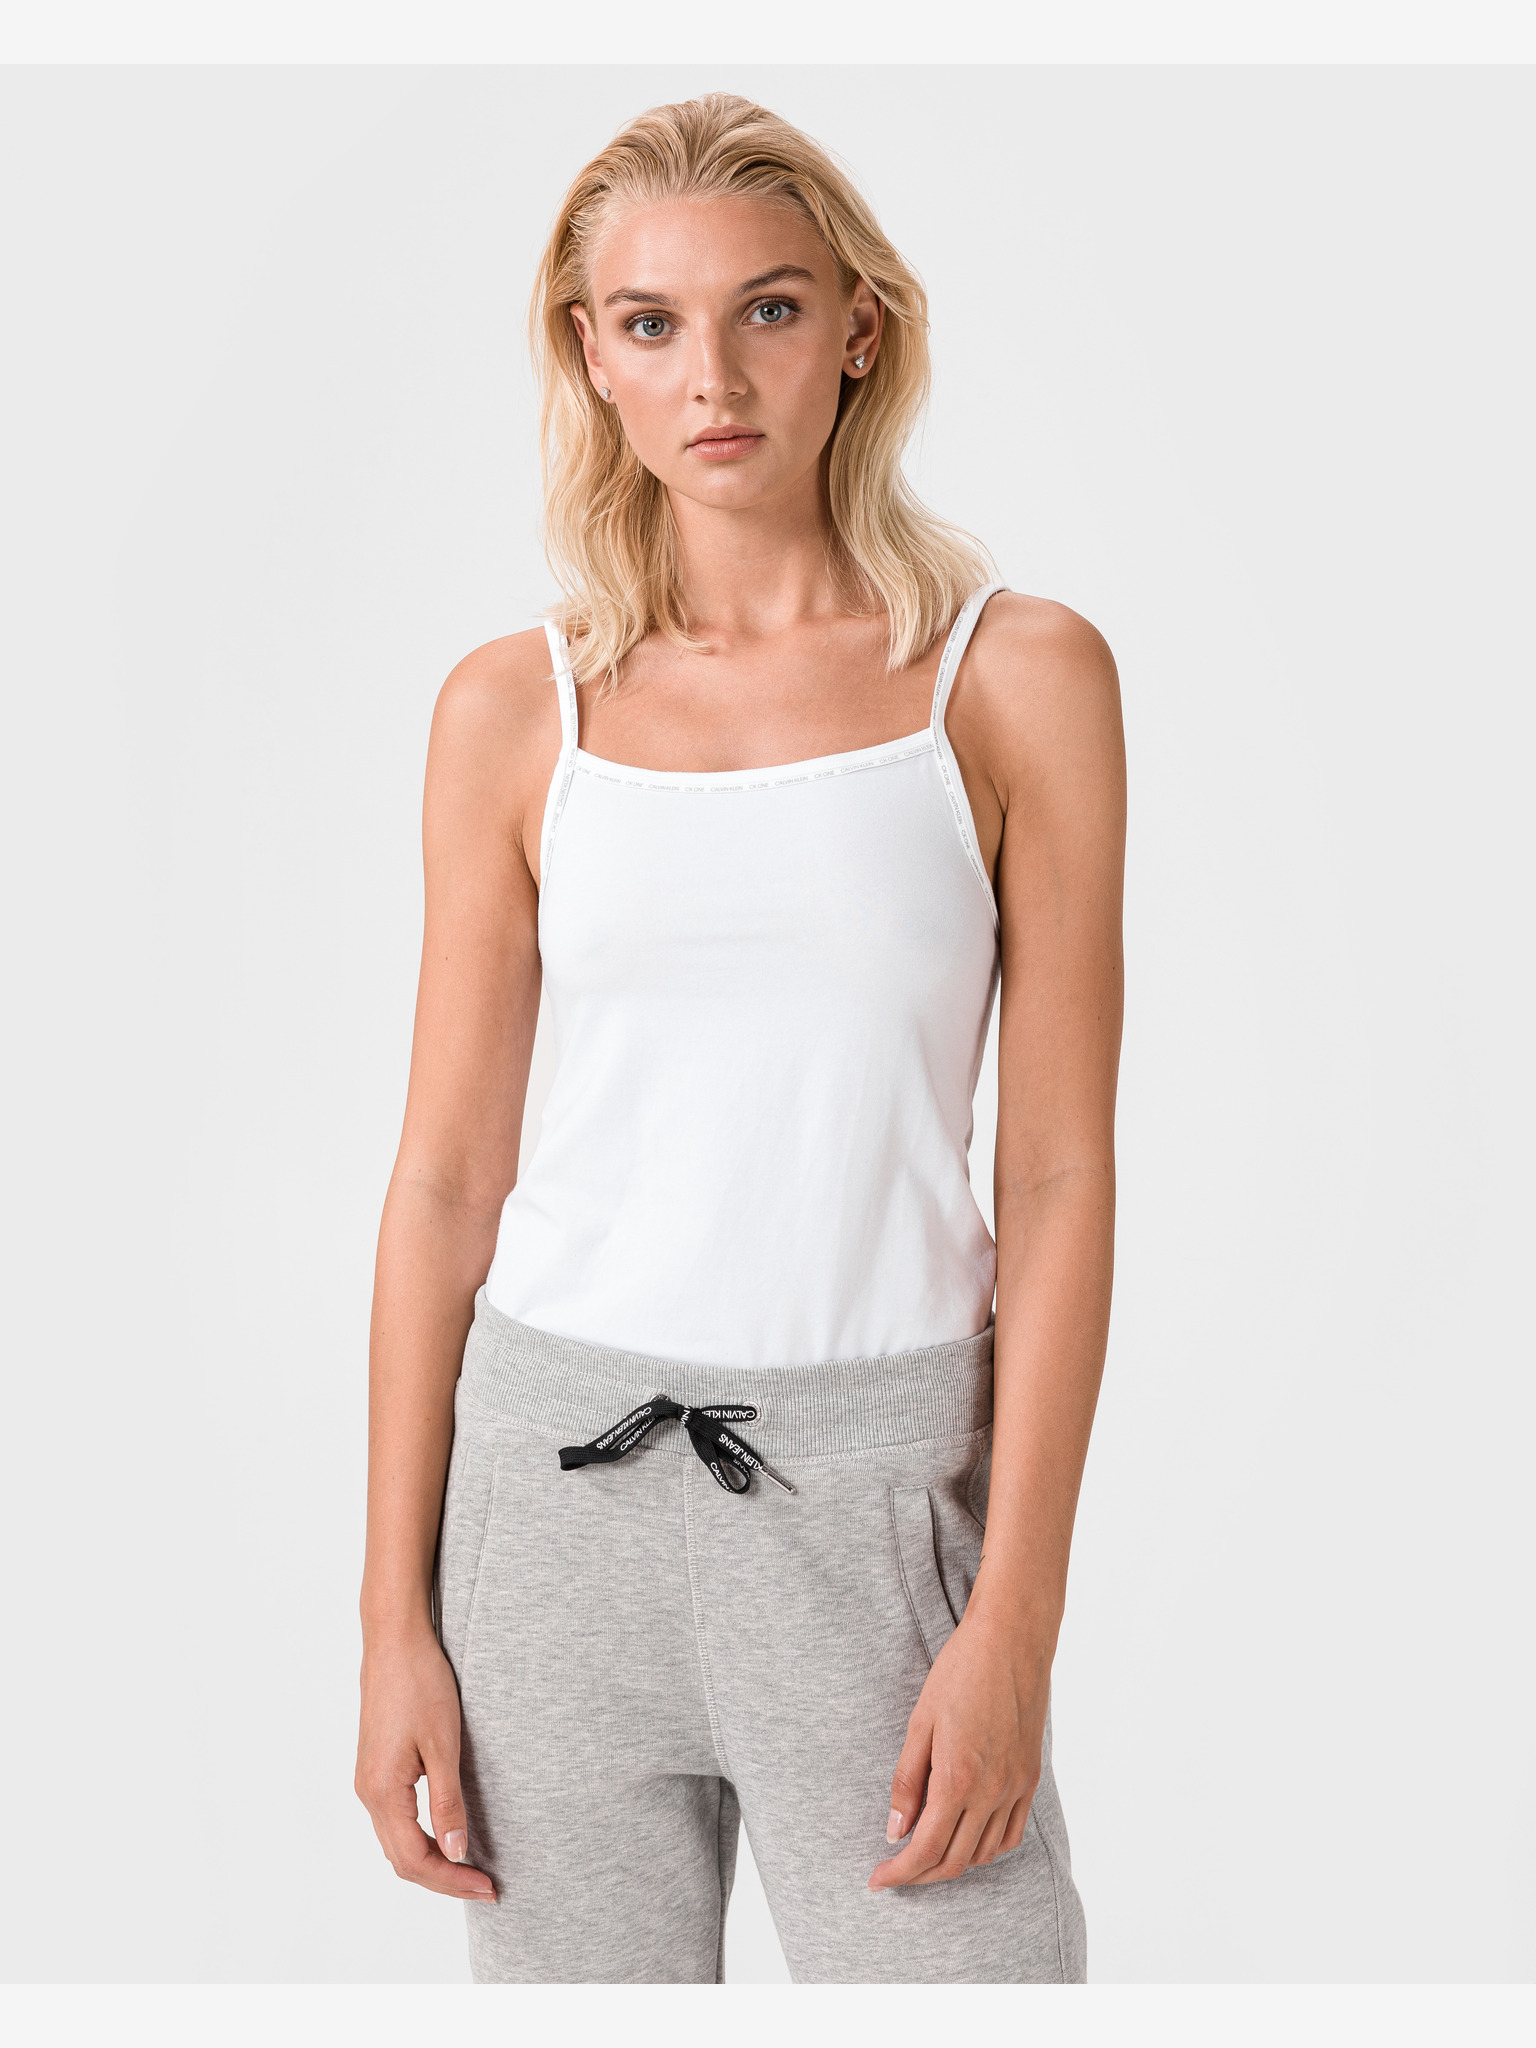 Calvin Klein Women's Dropped Armhole Tank Top White Size Small